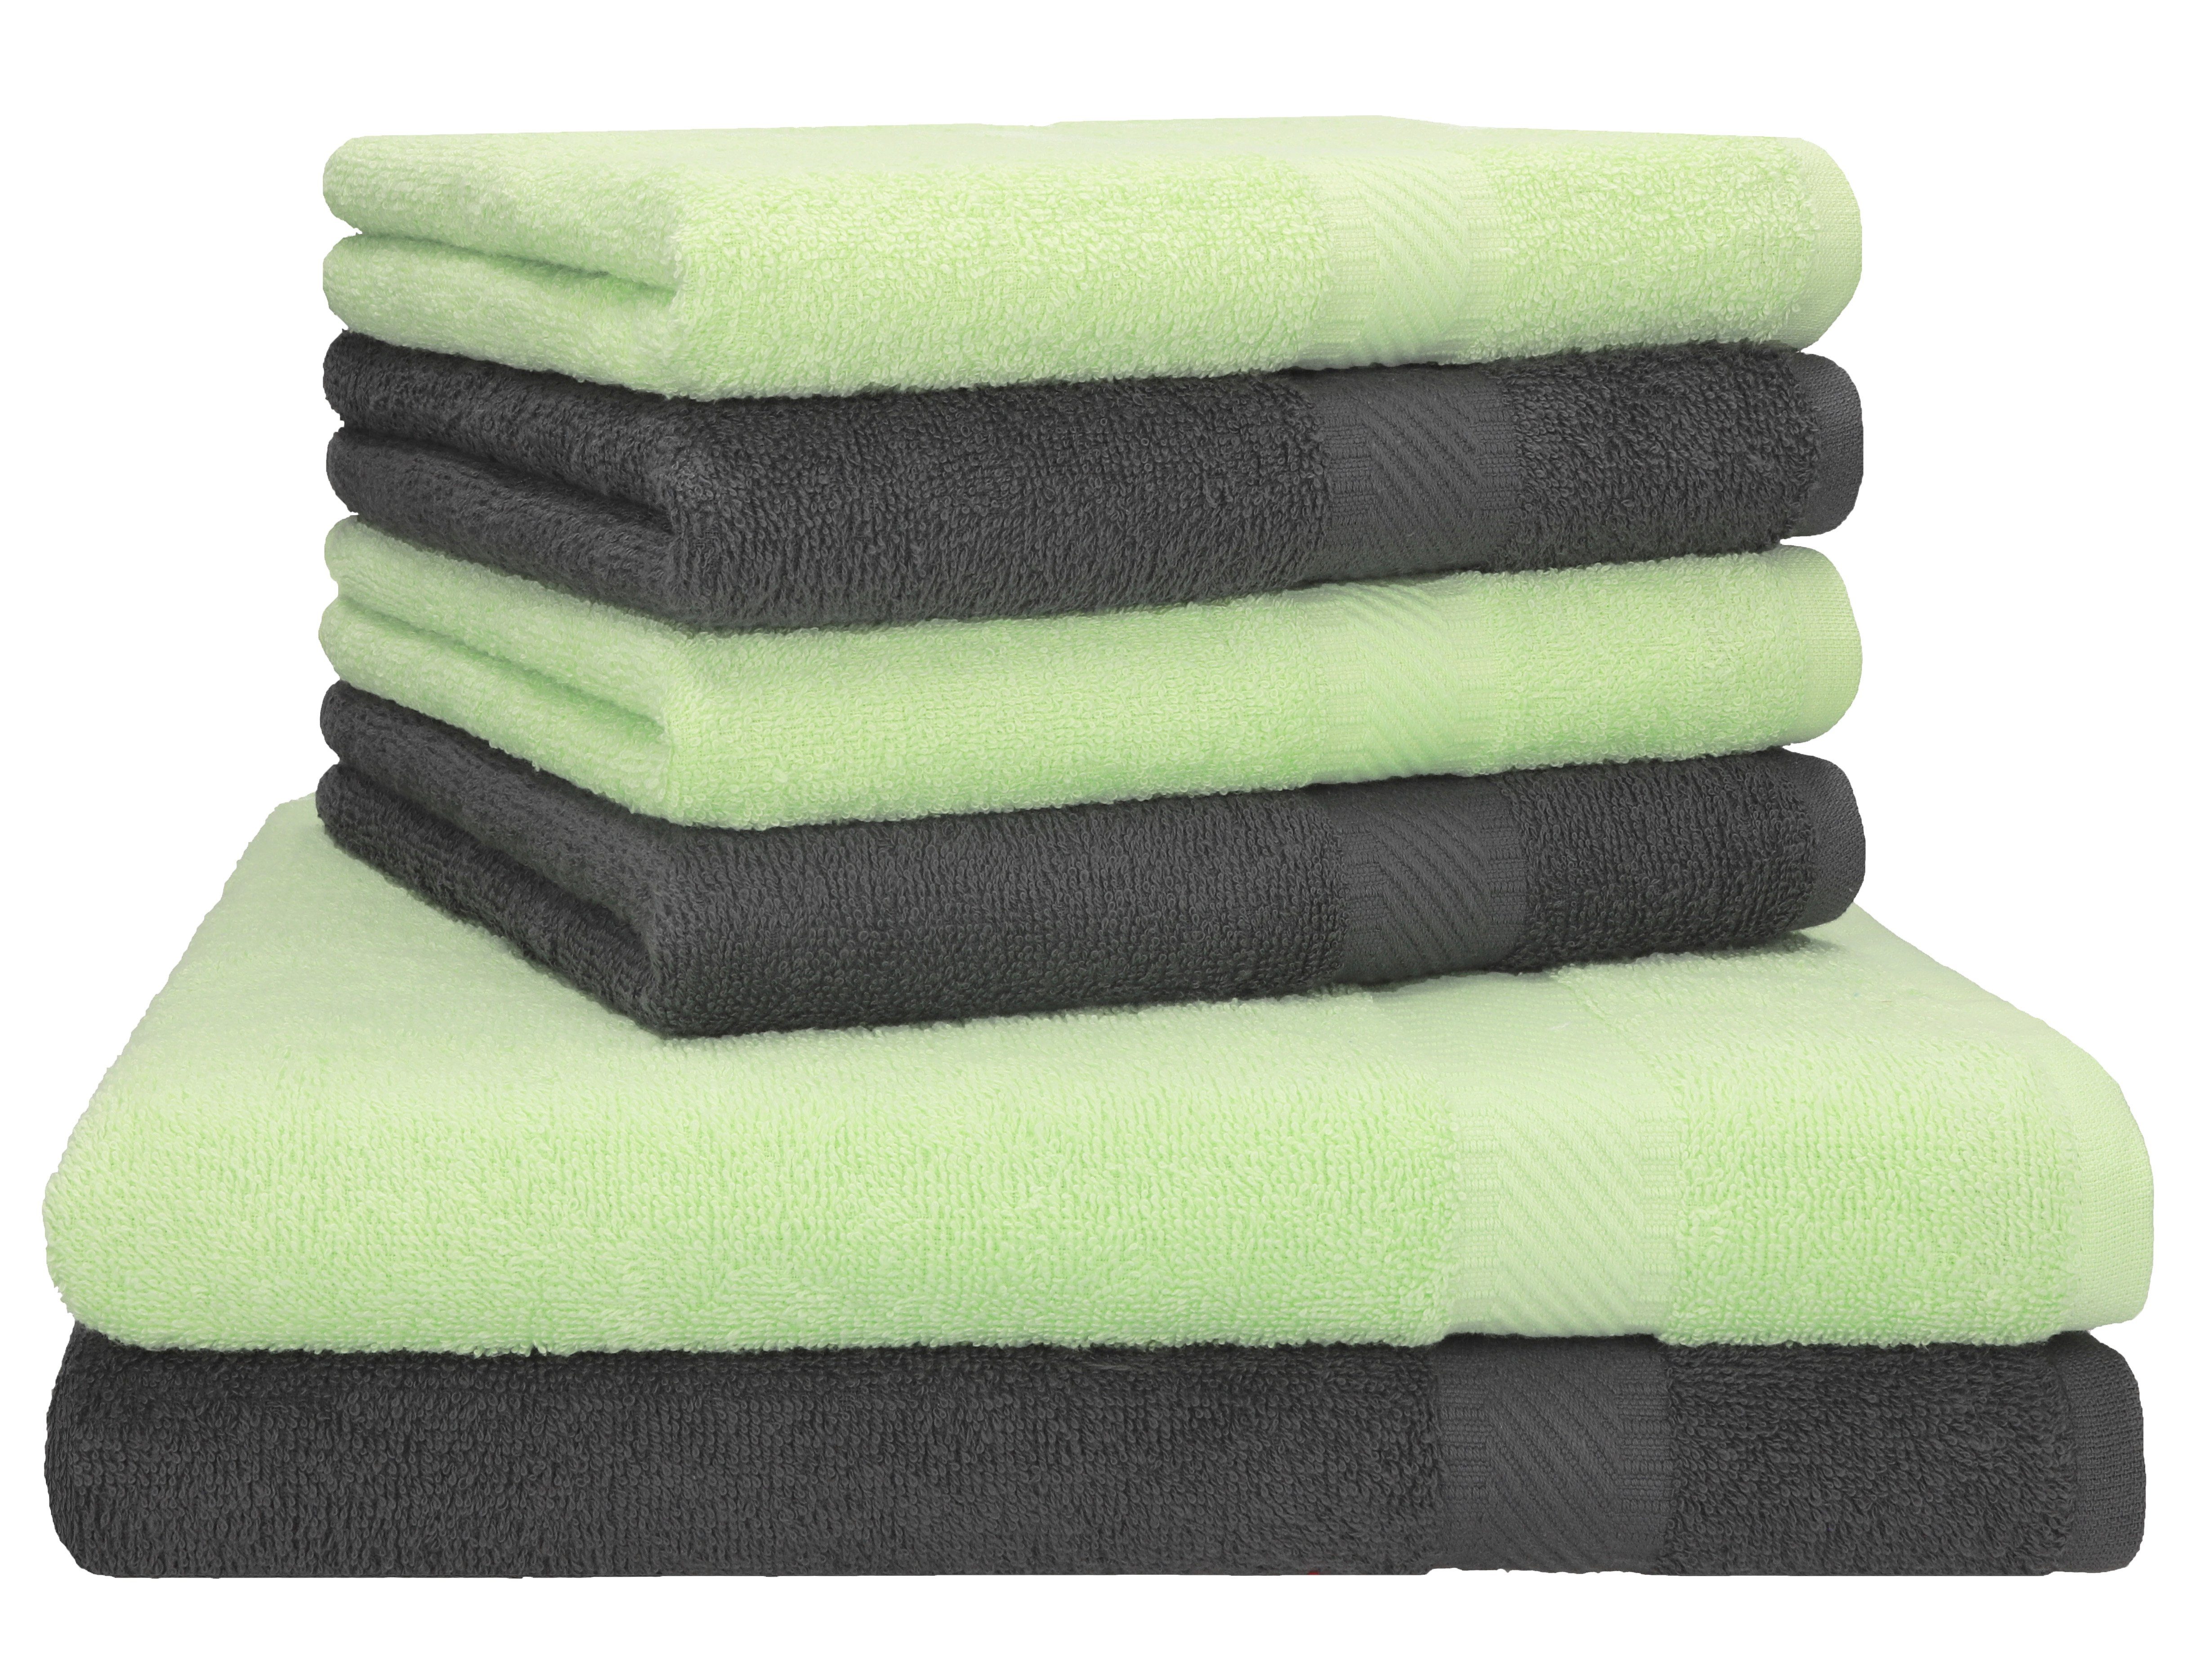 Betz Handtuch Set Palermo 6er 2x Liegetücher 70x140 cm 4x Handtücher, 100% Baumwolle anthrazit/grün